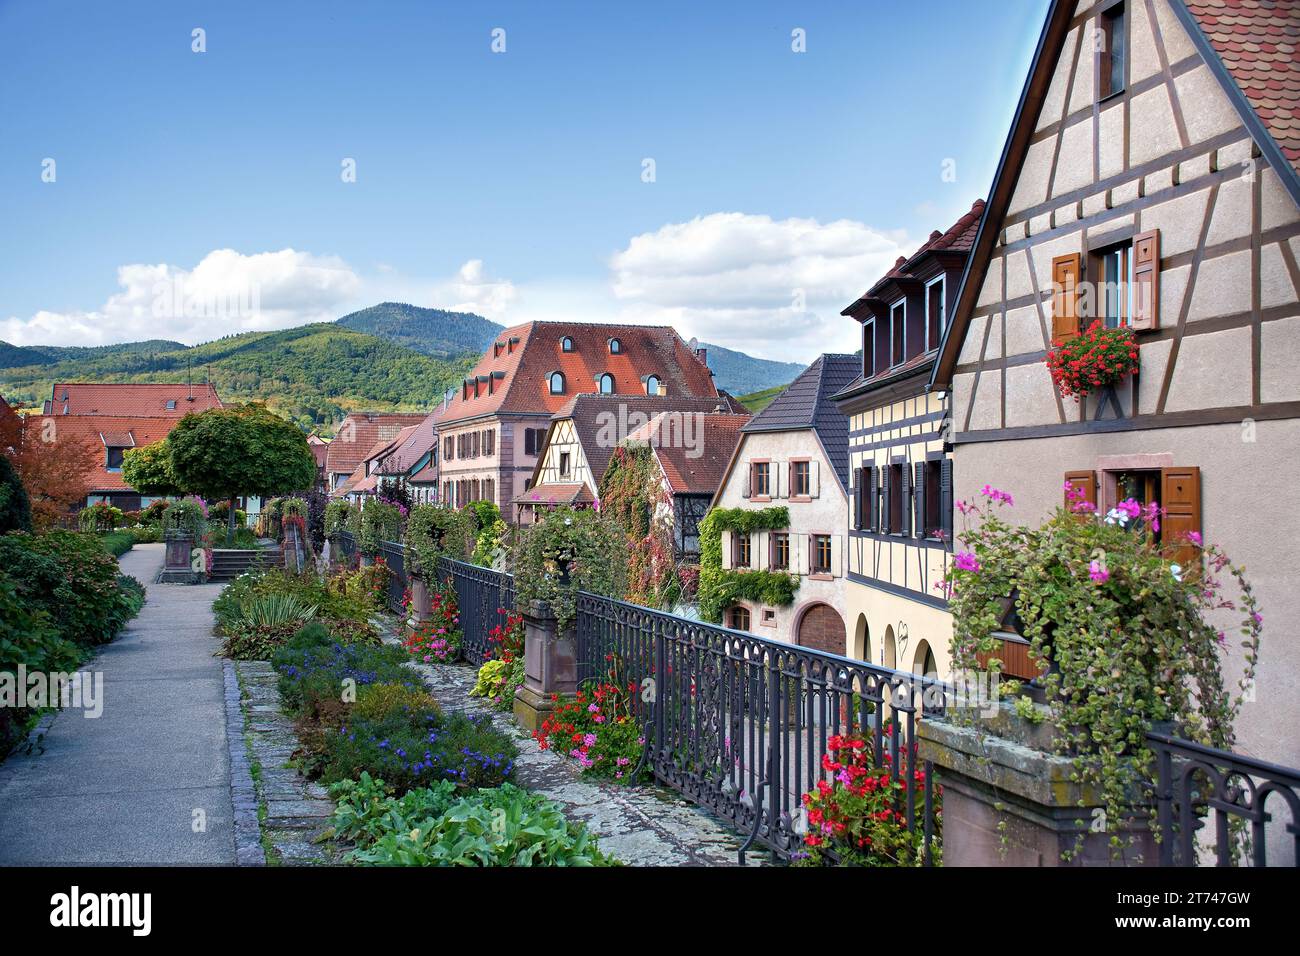 Bergheim, villaggio del vino in Alsazia, case colorate e metà in legno nel centro storico medievale Foto Stock